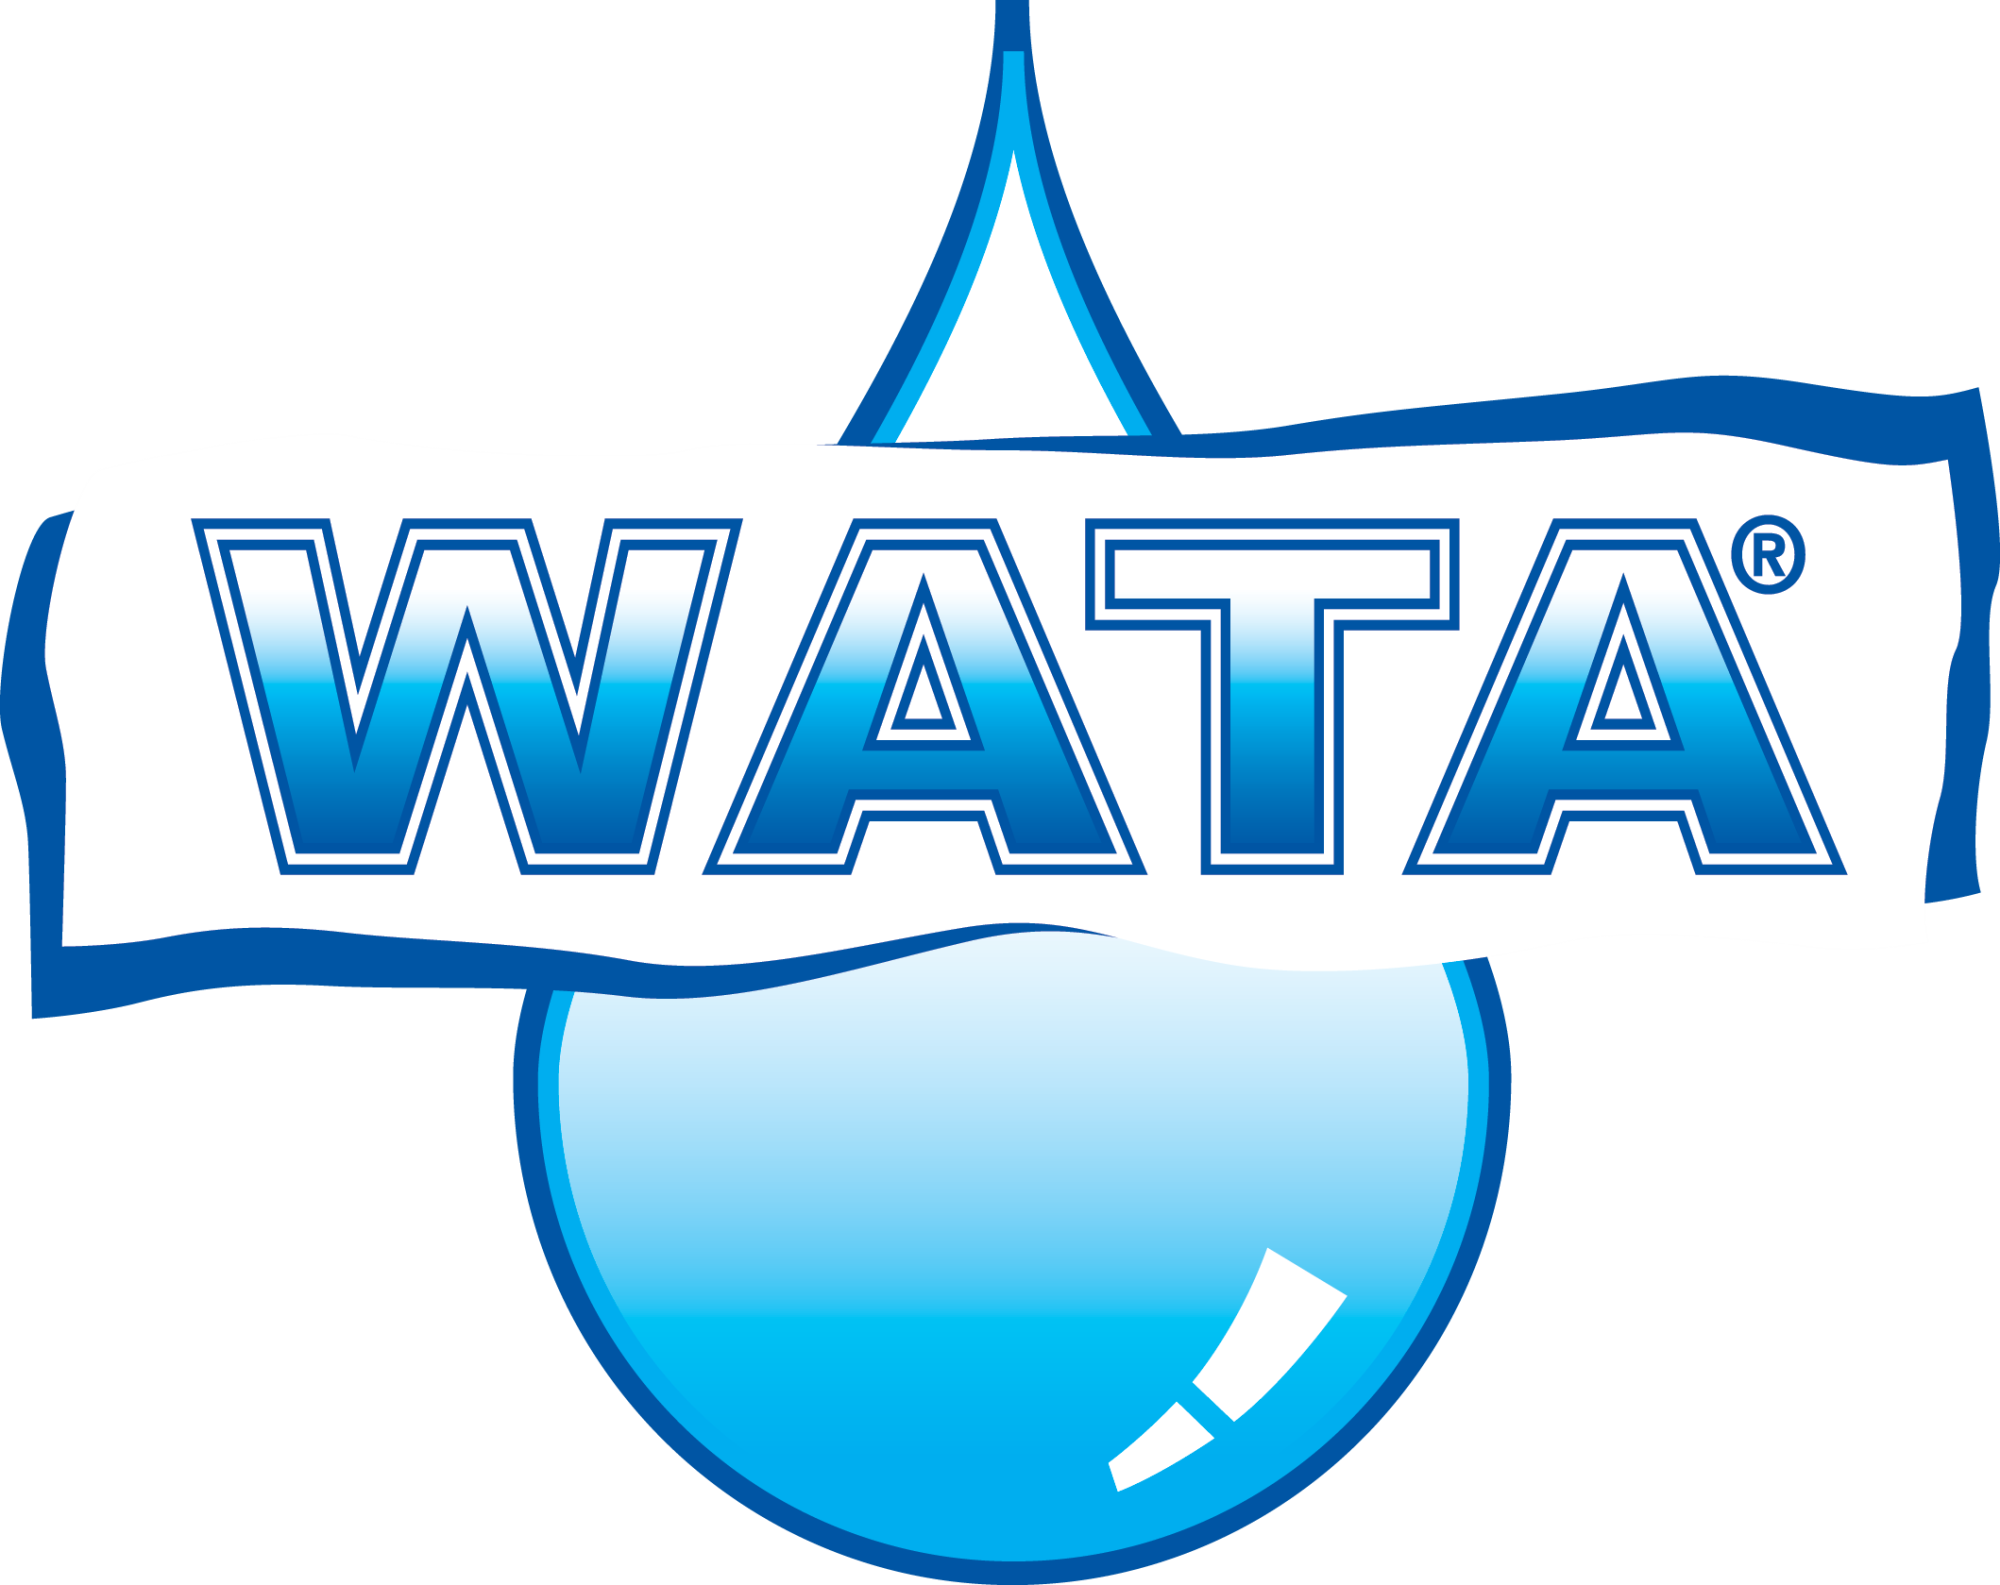 Wata logo